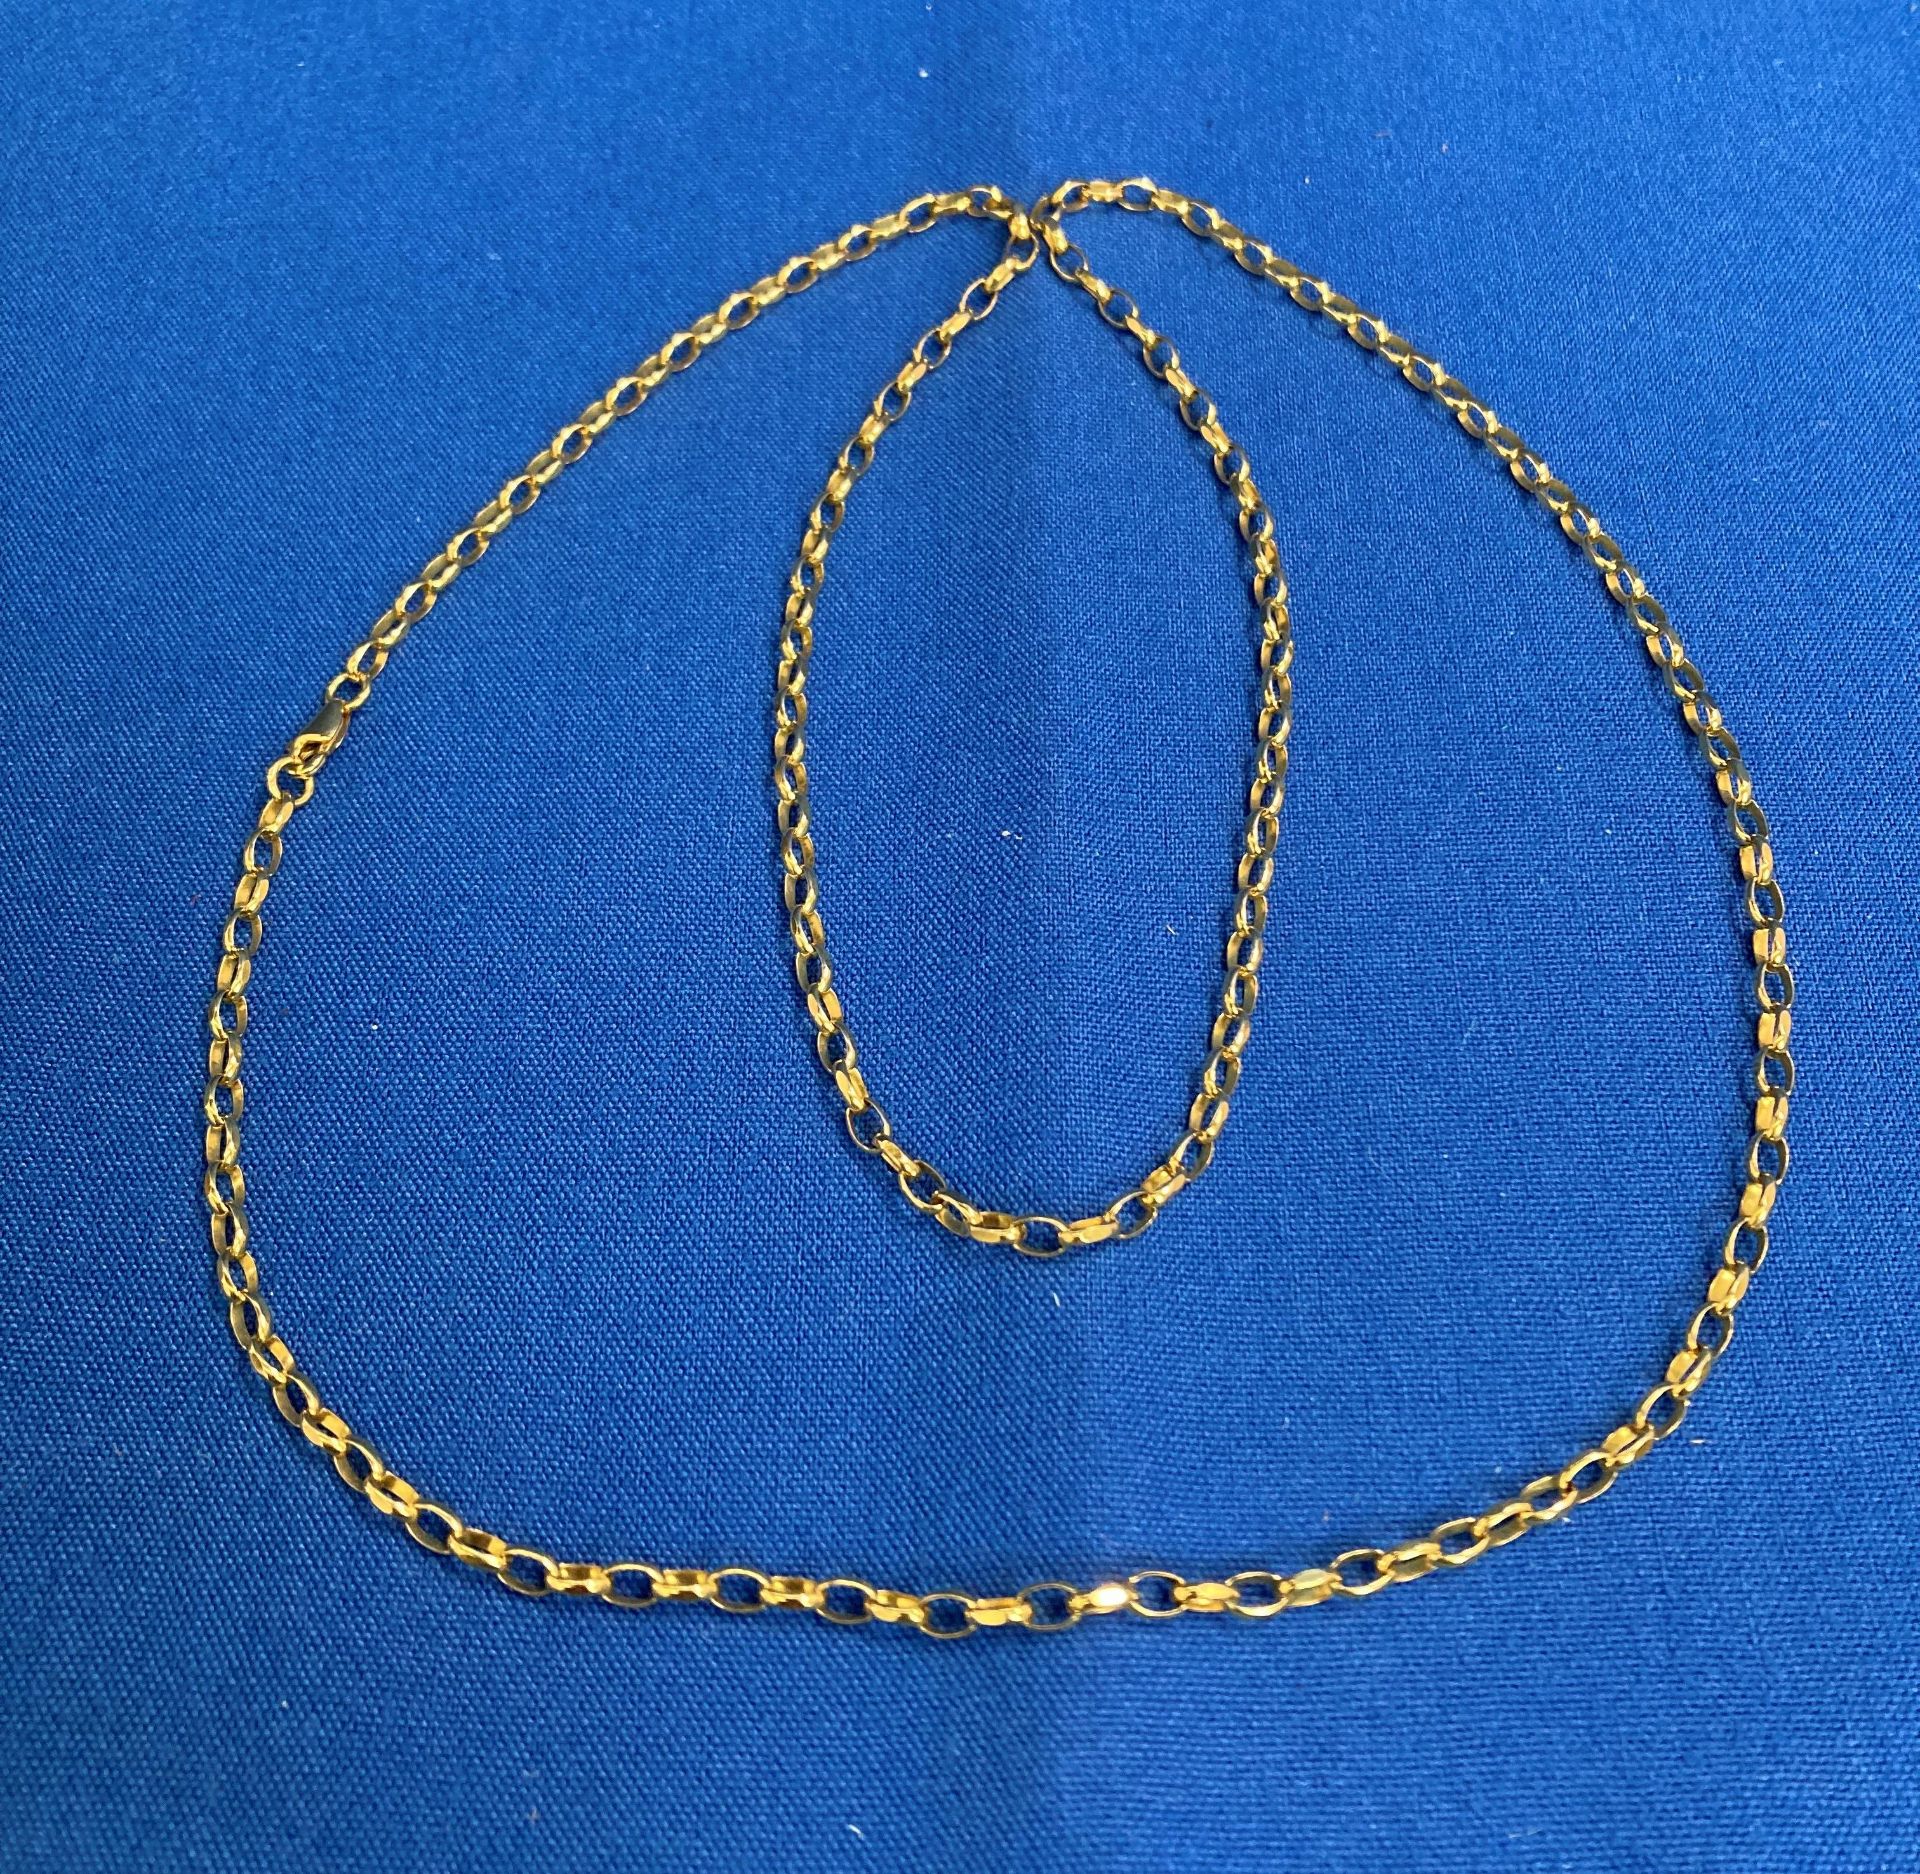 9ct gold (375) 28" long belcher chain. Weight: 11.